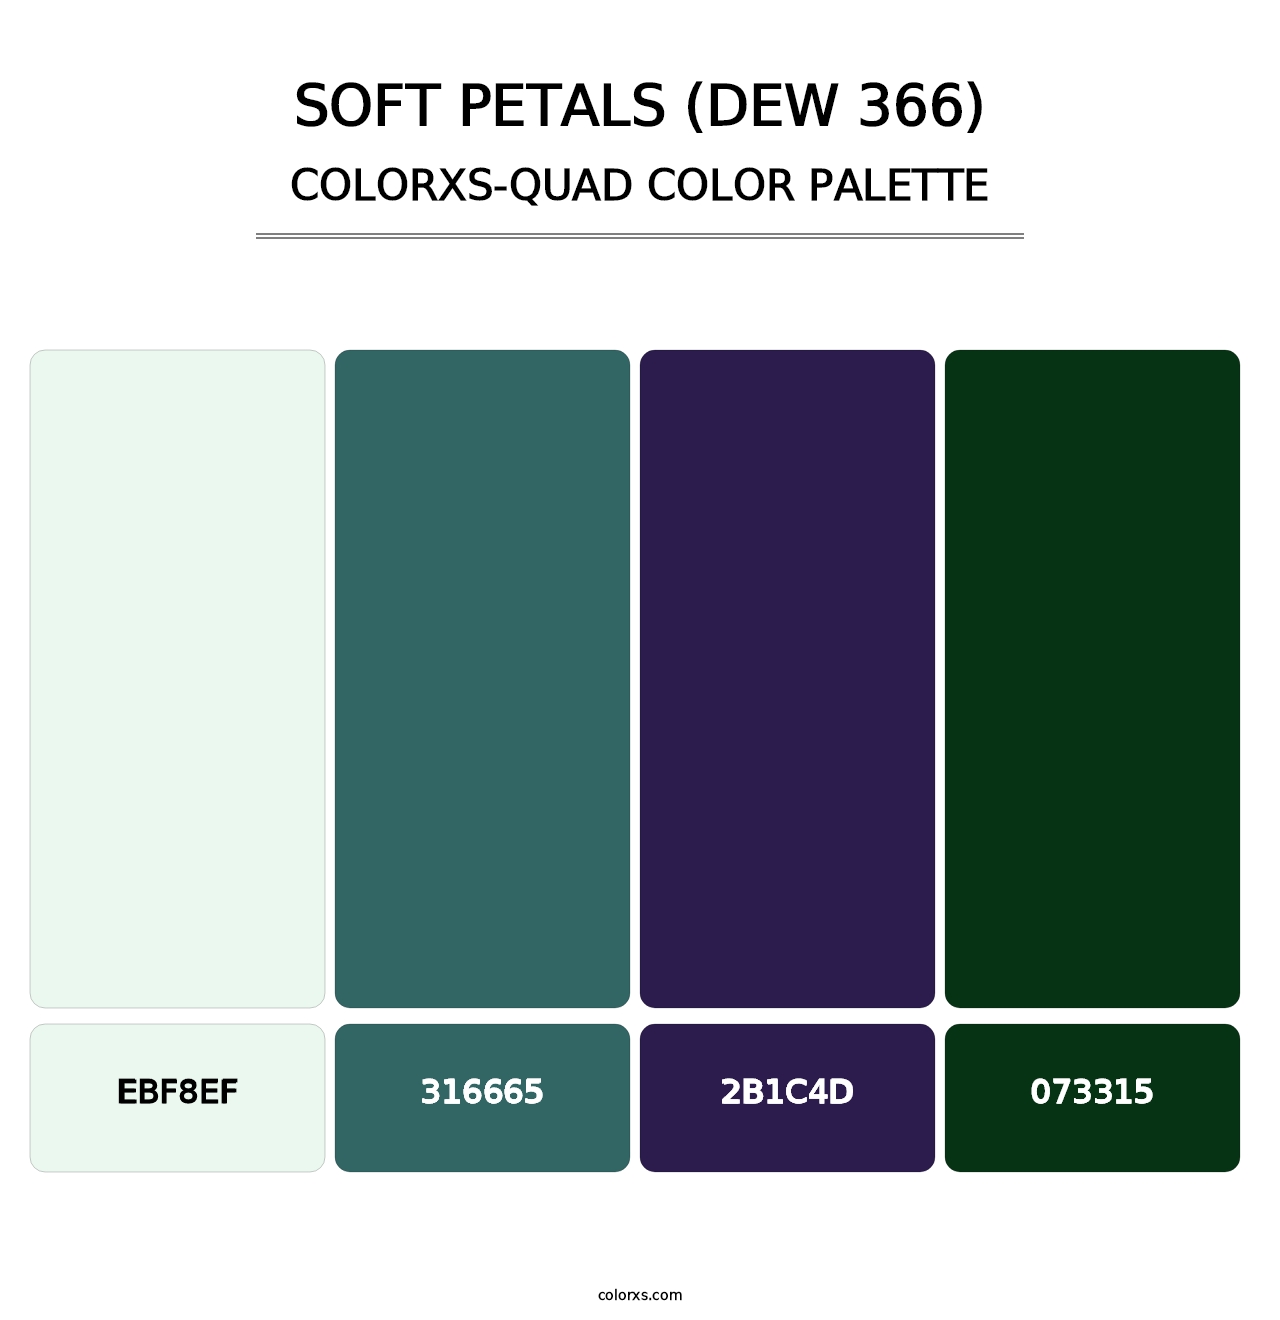 Soft Petals (DEW 366) - Colorxs Quad Palette